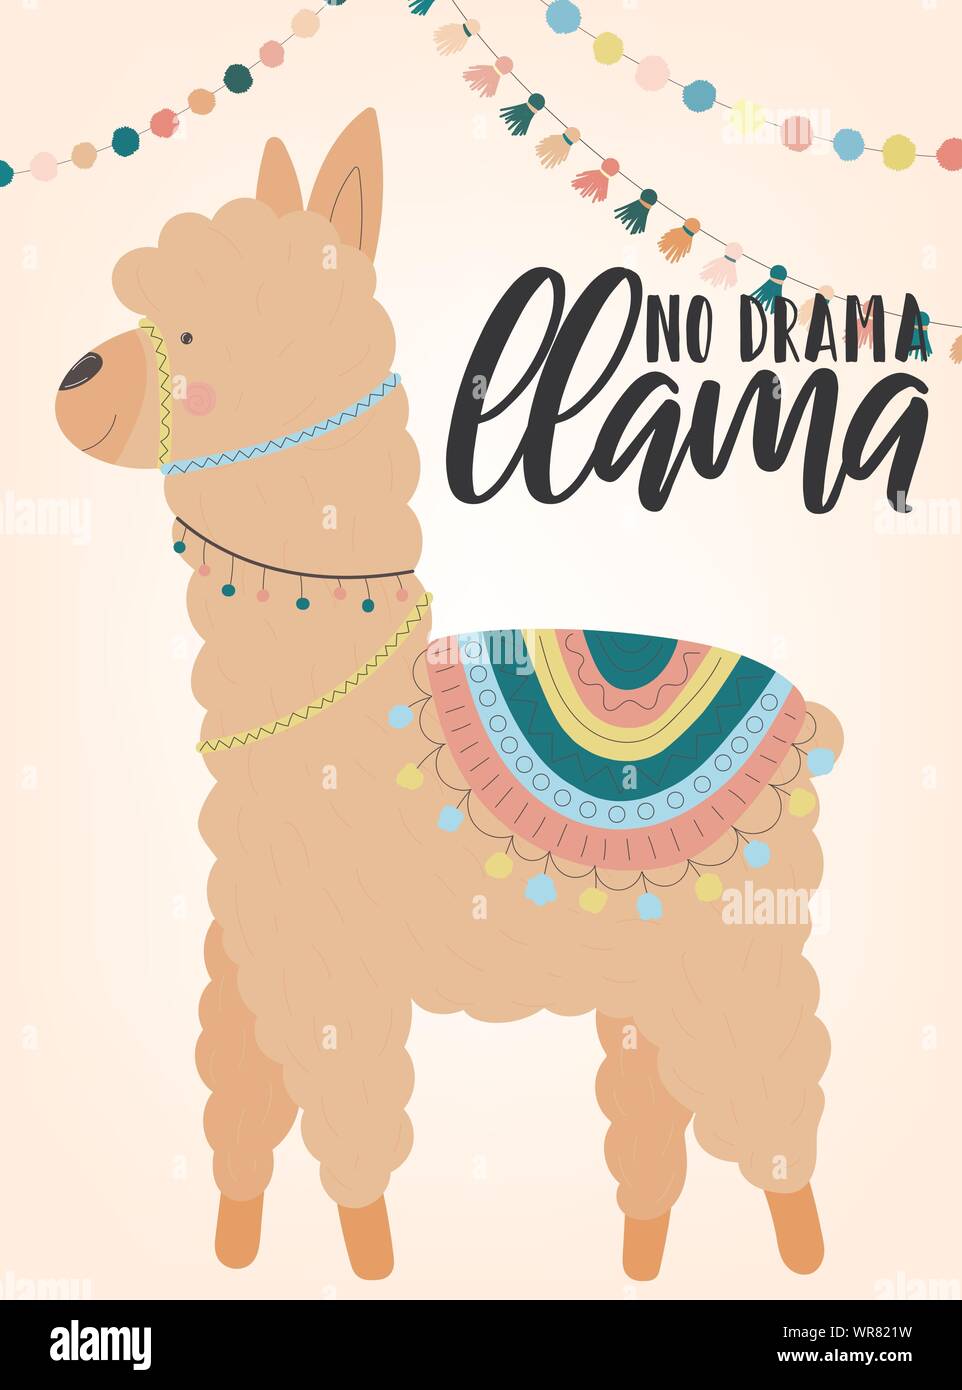 Ein Vektor Illustration einer Handgezeichneten beige Alpaka in nationalen Südamerikanischen Kleidung mit Dekorationen und Inschrift kein Drama Llama. Bild für Chil Stock Vektor